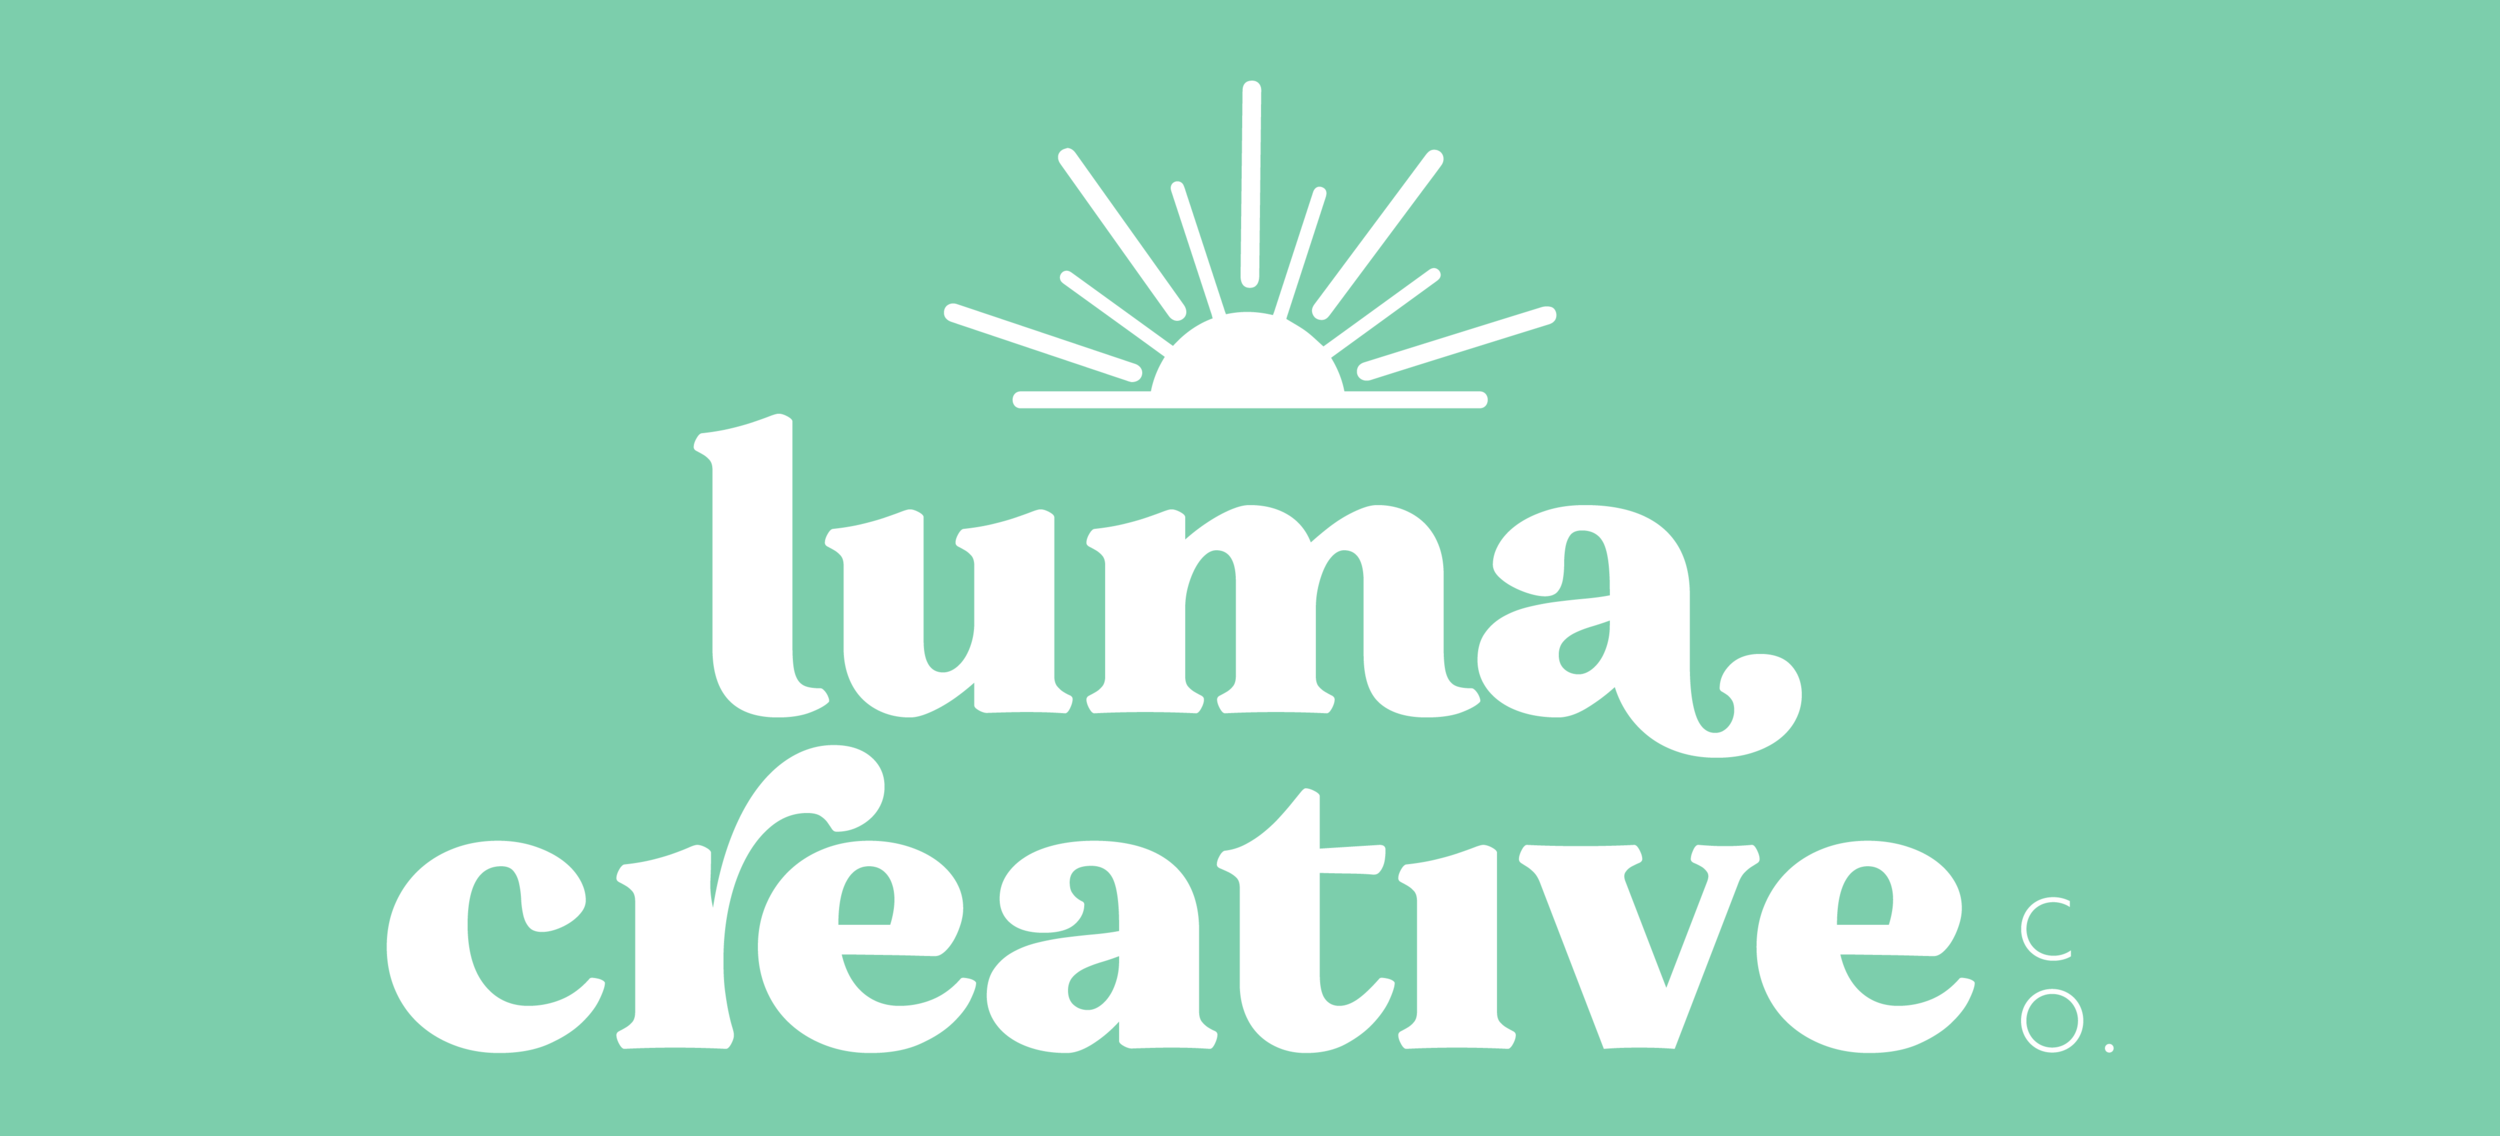 Luma Creative Co.